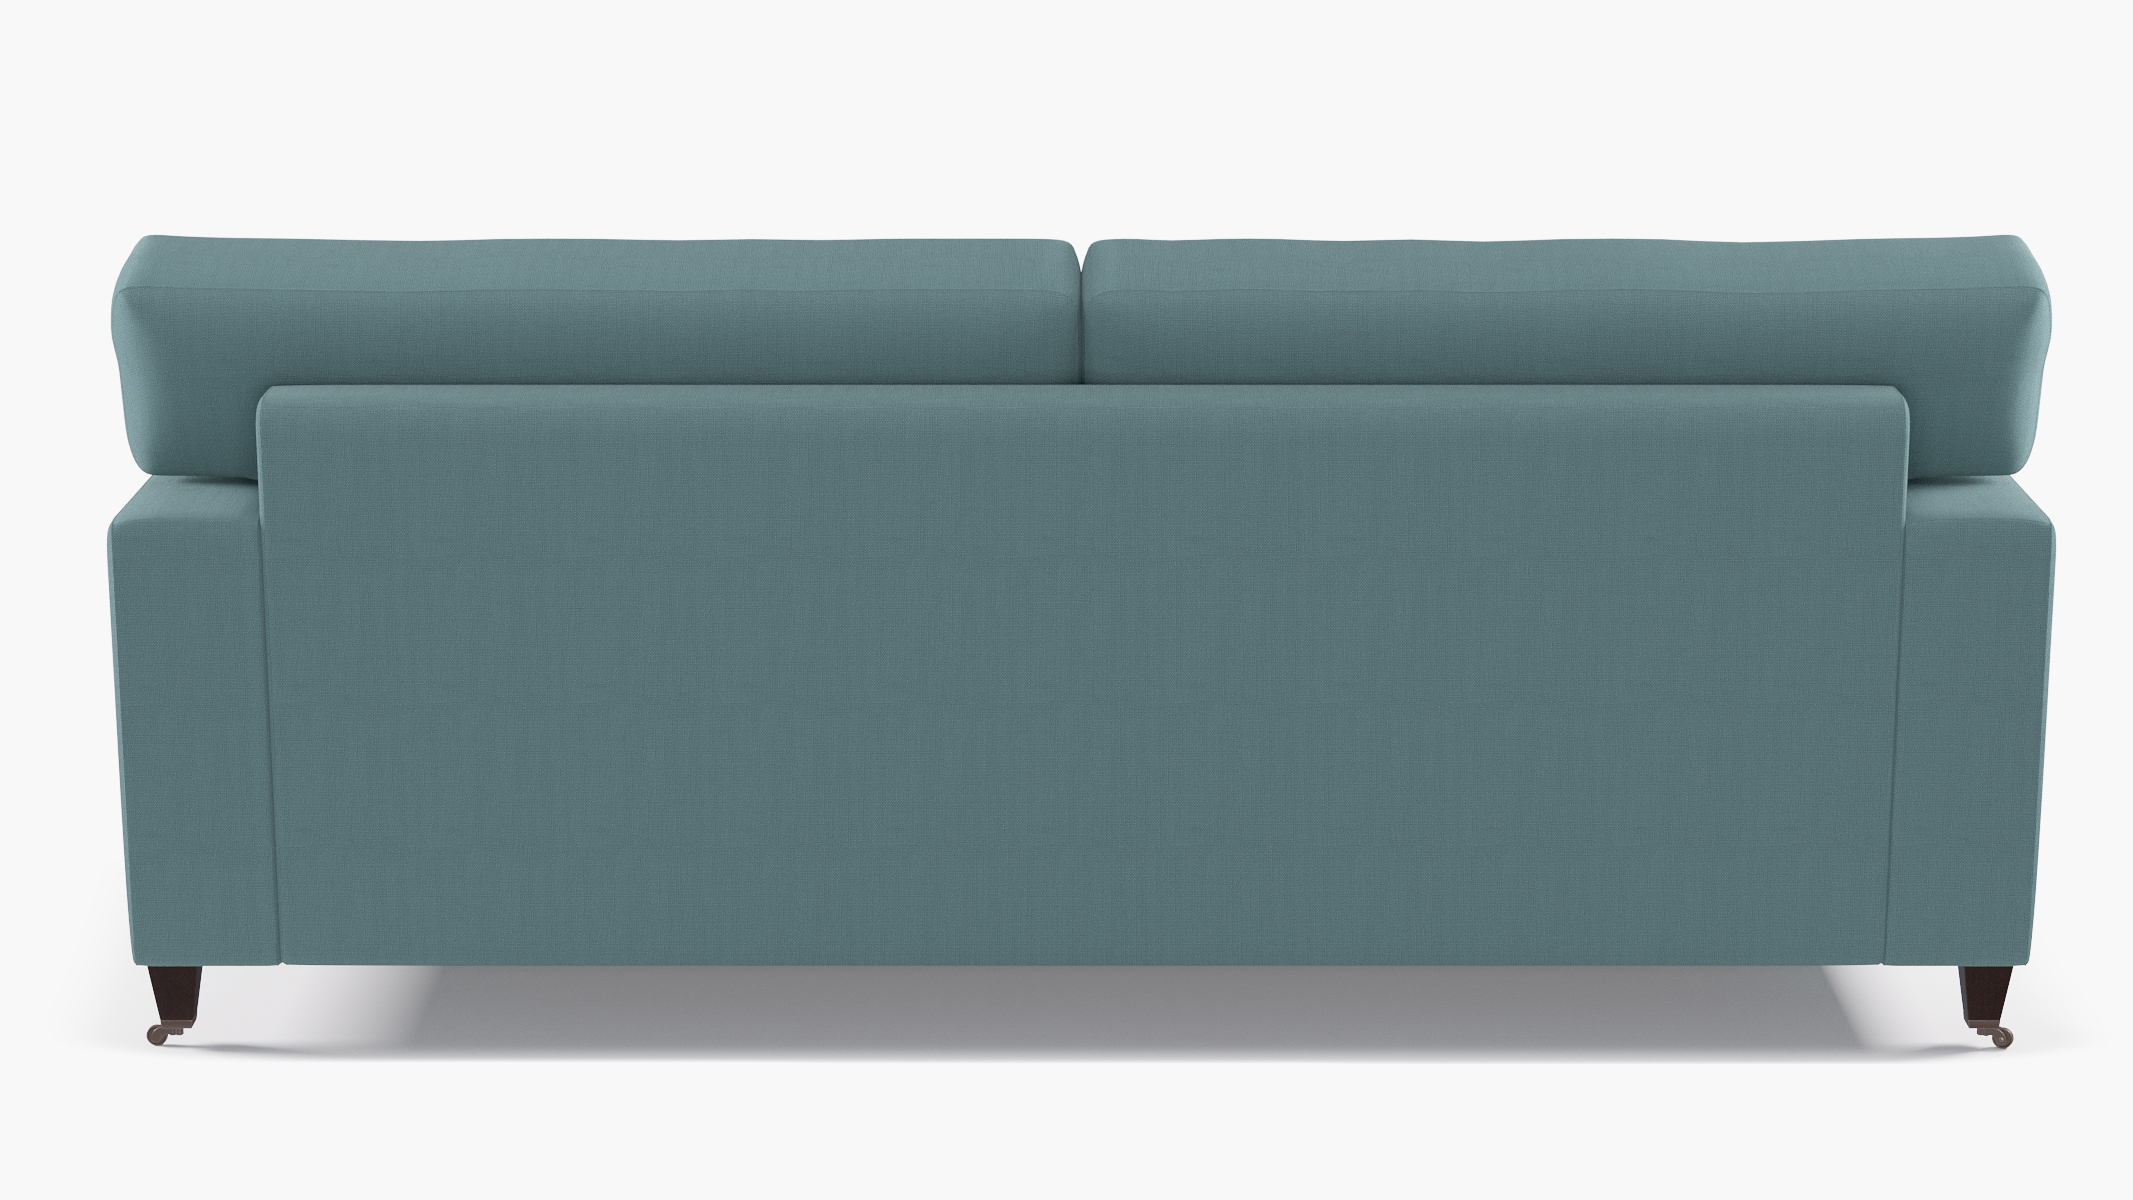 Classic Sofa, Seaglass Everyday Linen, Espresso - Image 3